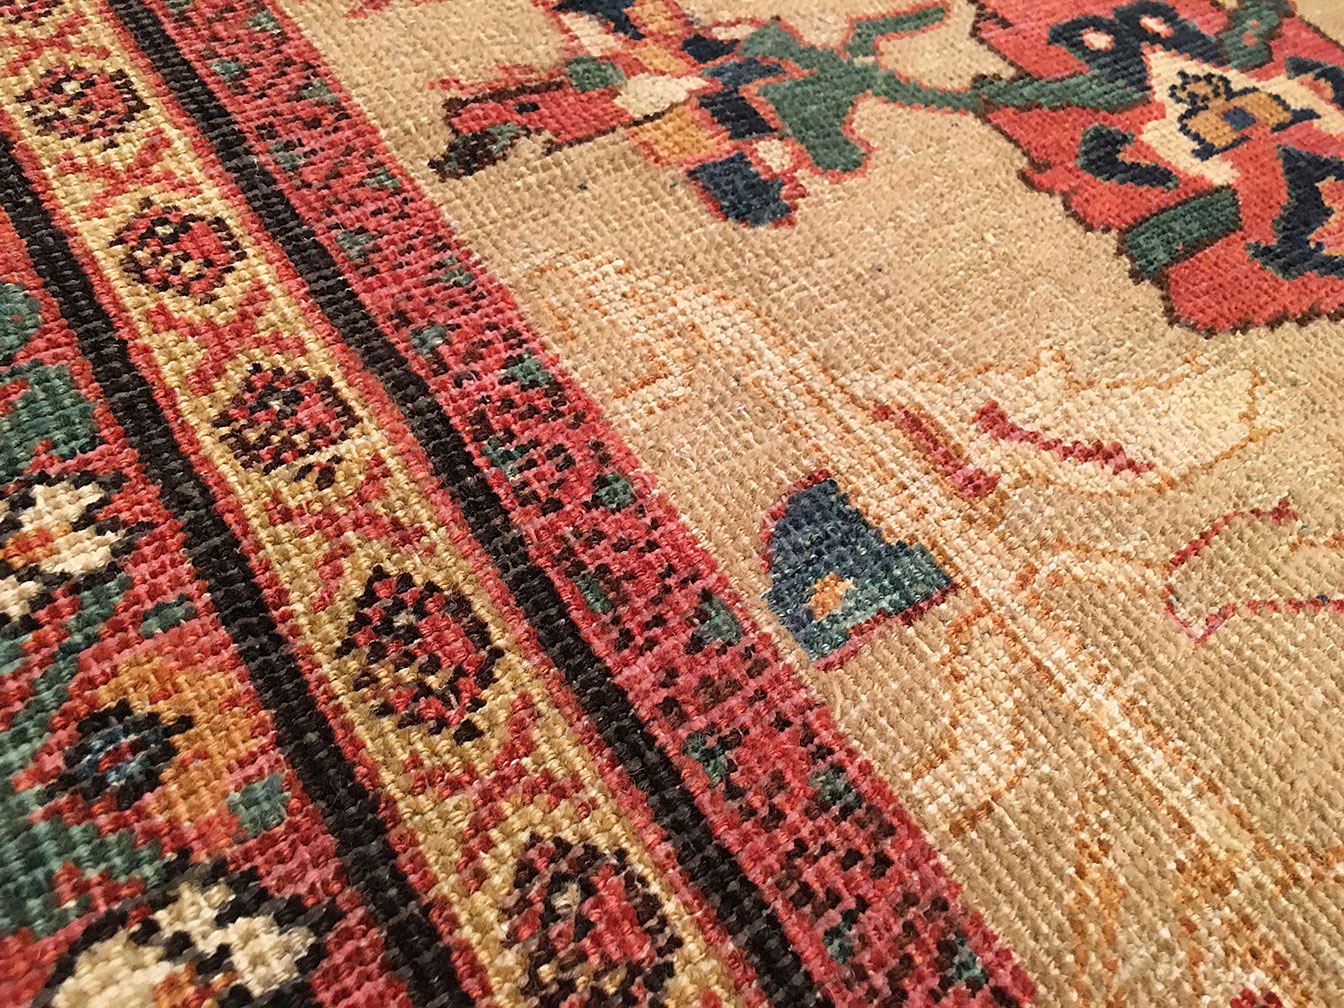 Antique sultan abad Carpet - # 51416